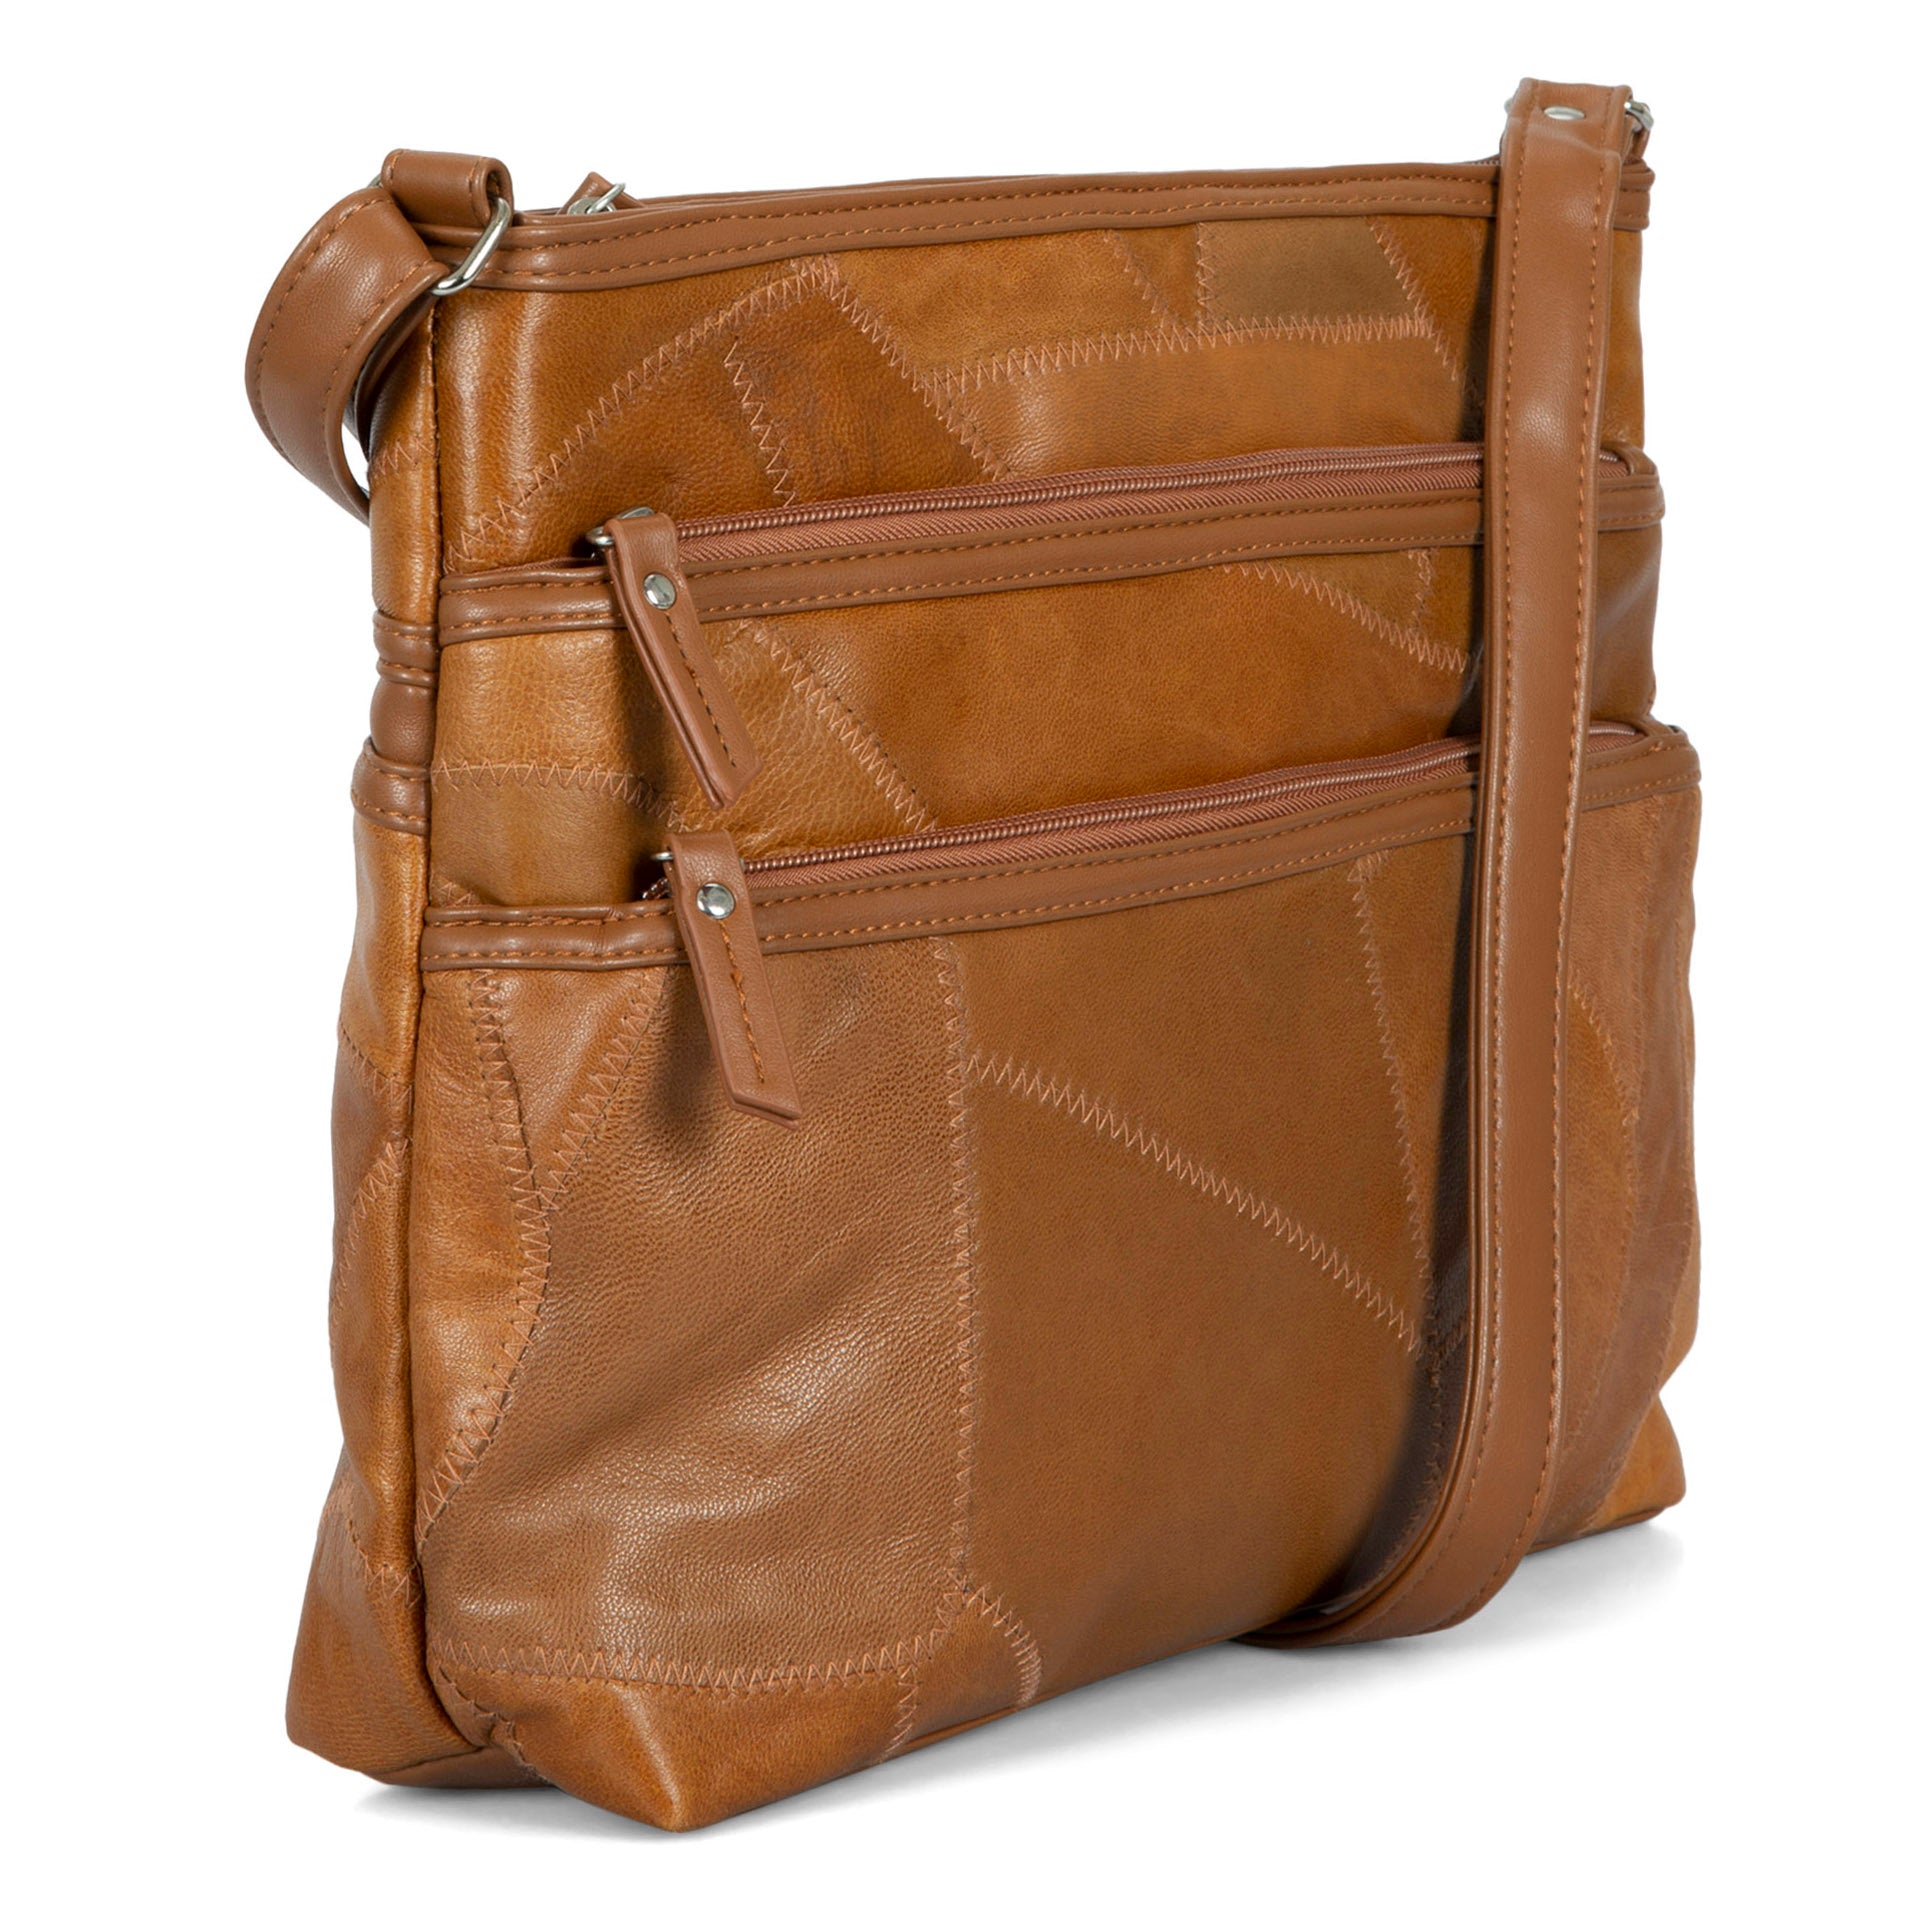 Medium Crossbody Bag Patch & Twilly Scarf Decor | SHEIN